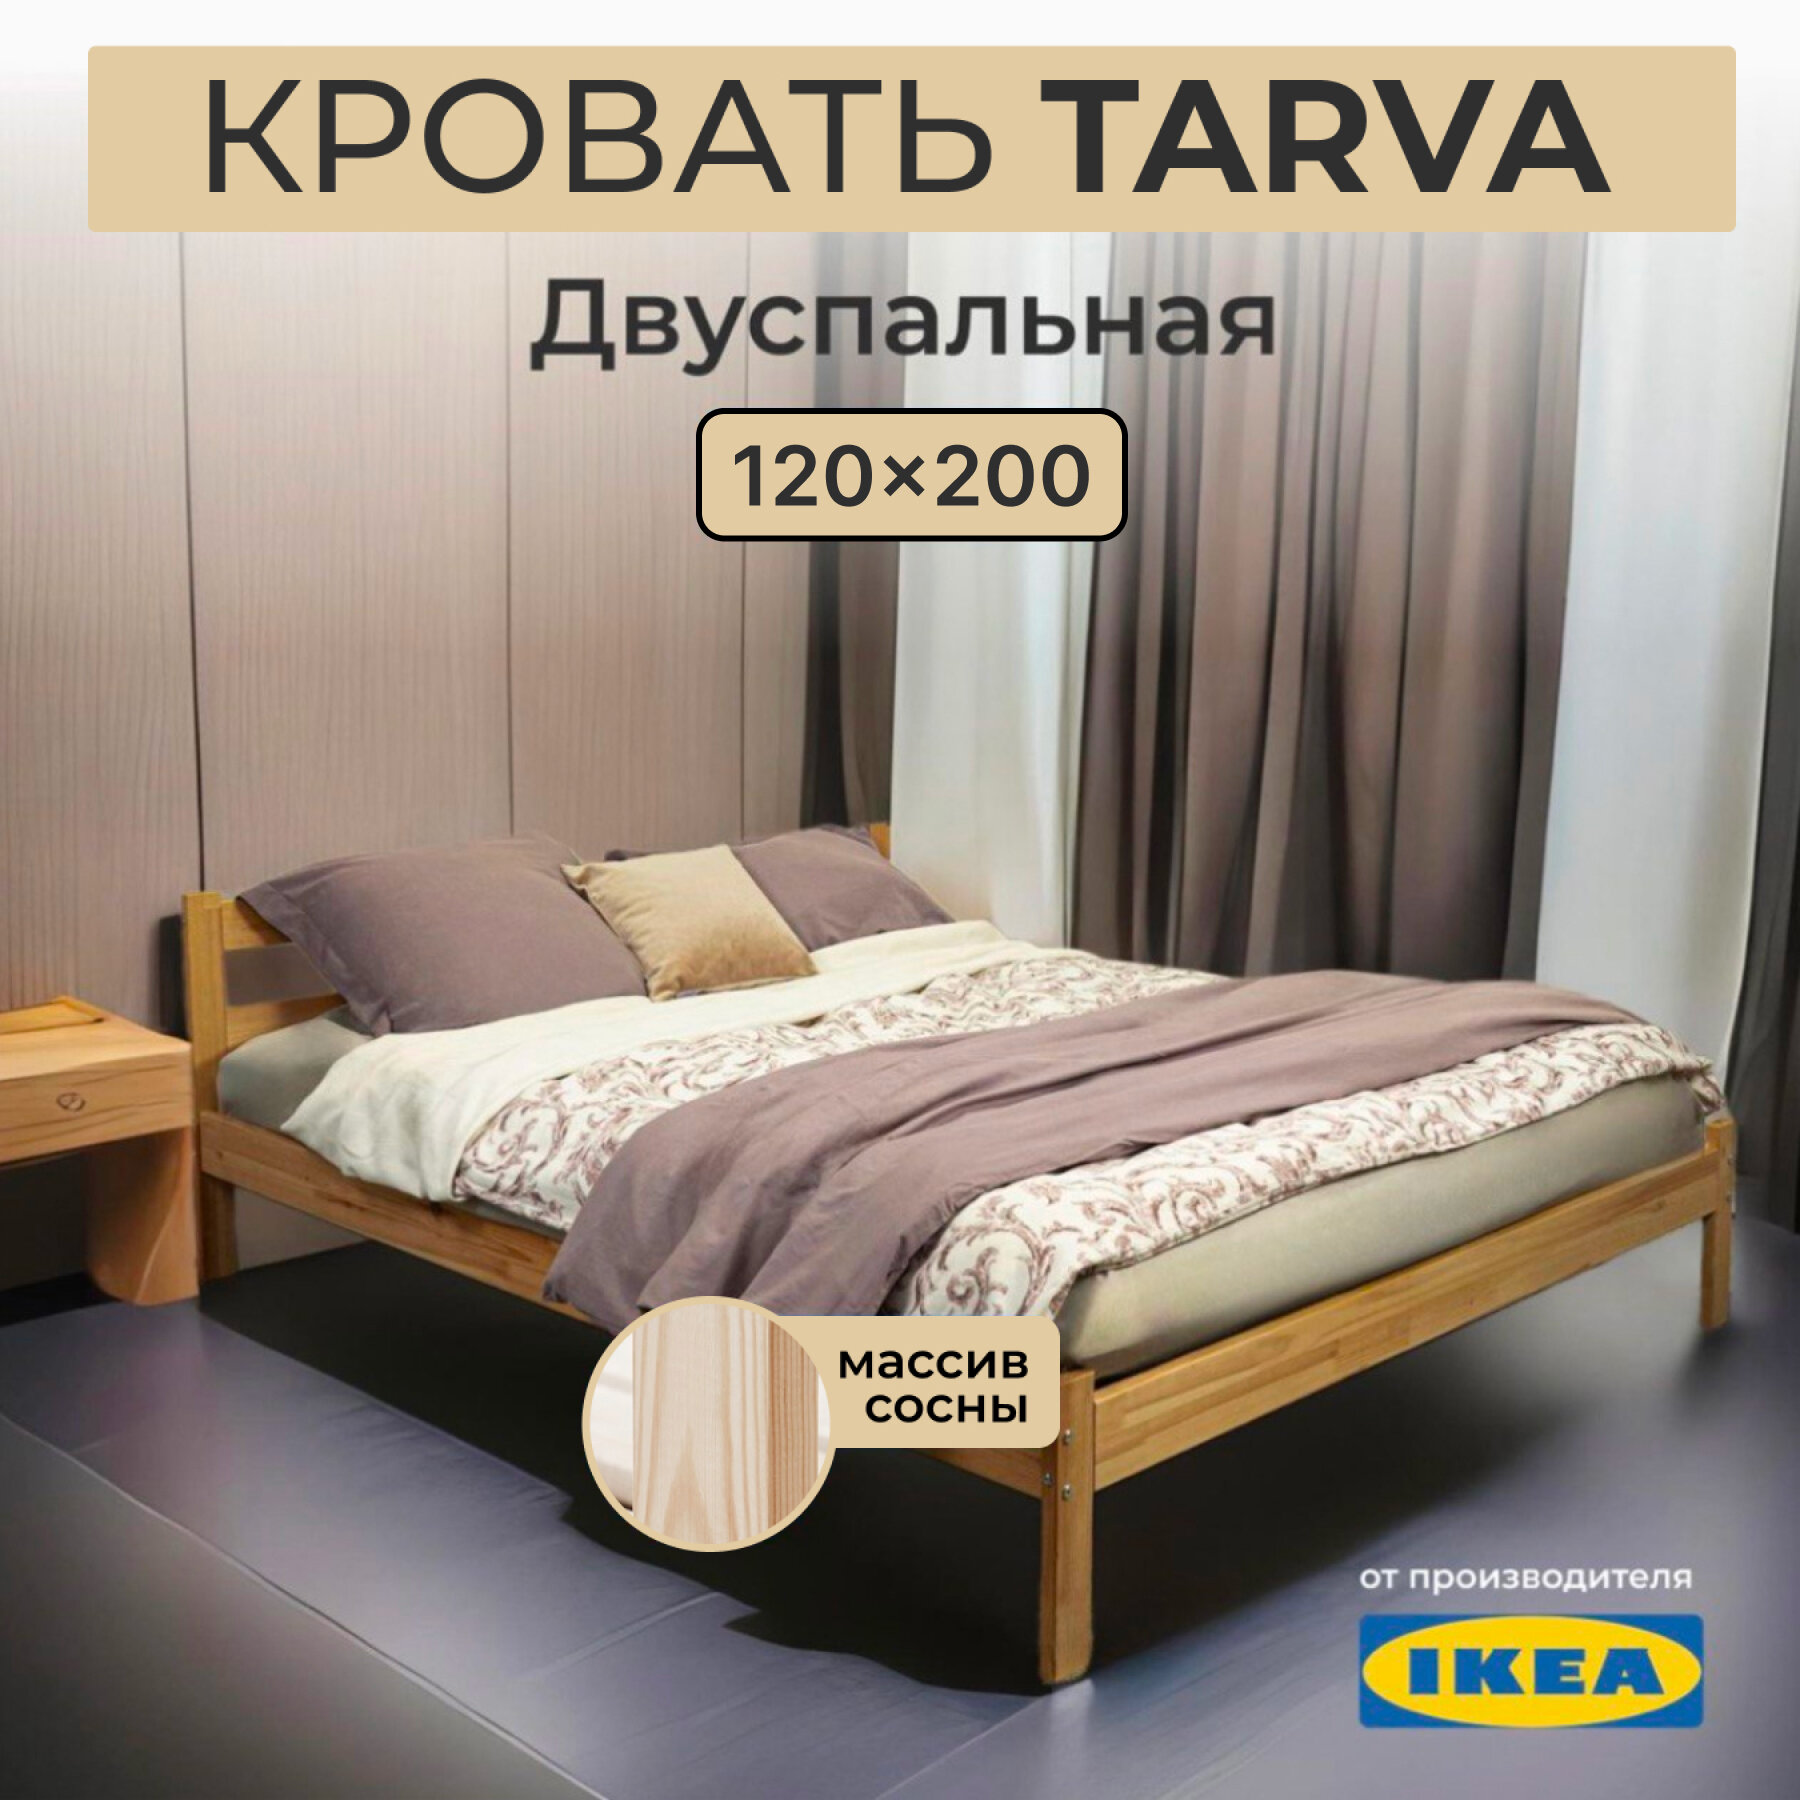 Кровать двуспальная икеа тарва, размер (ДхШ): 206х127 см, спальное место (ДхШ): 200х120 см, массив дерева, цвет: сосна